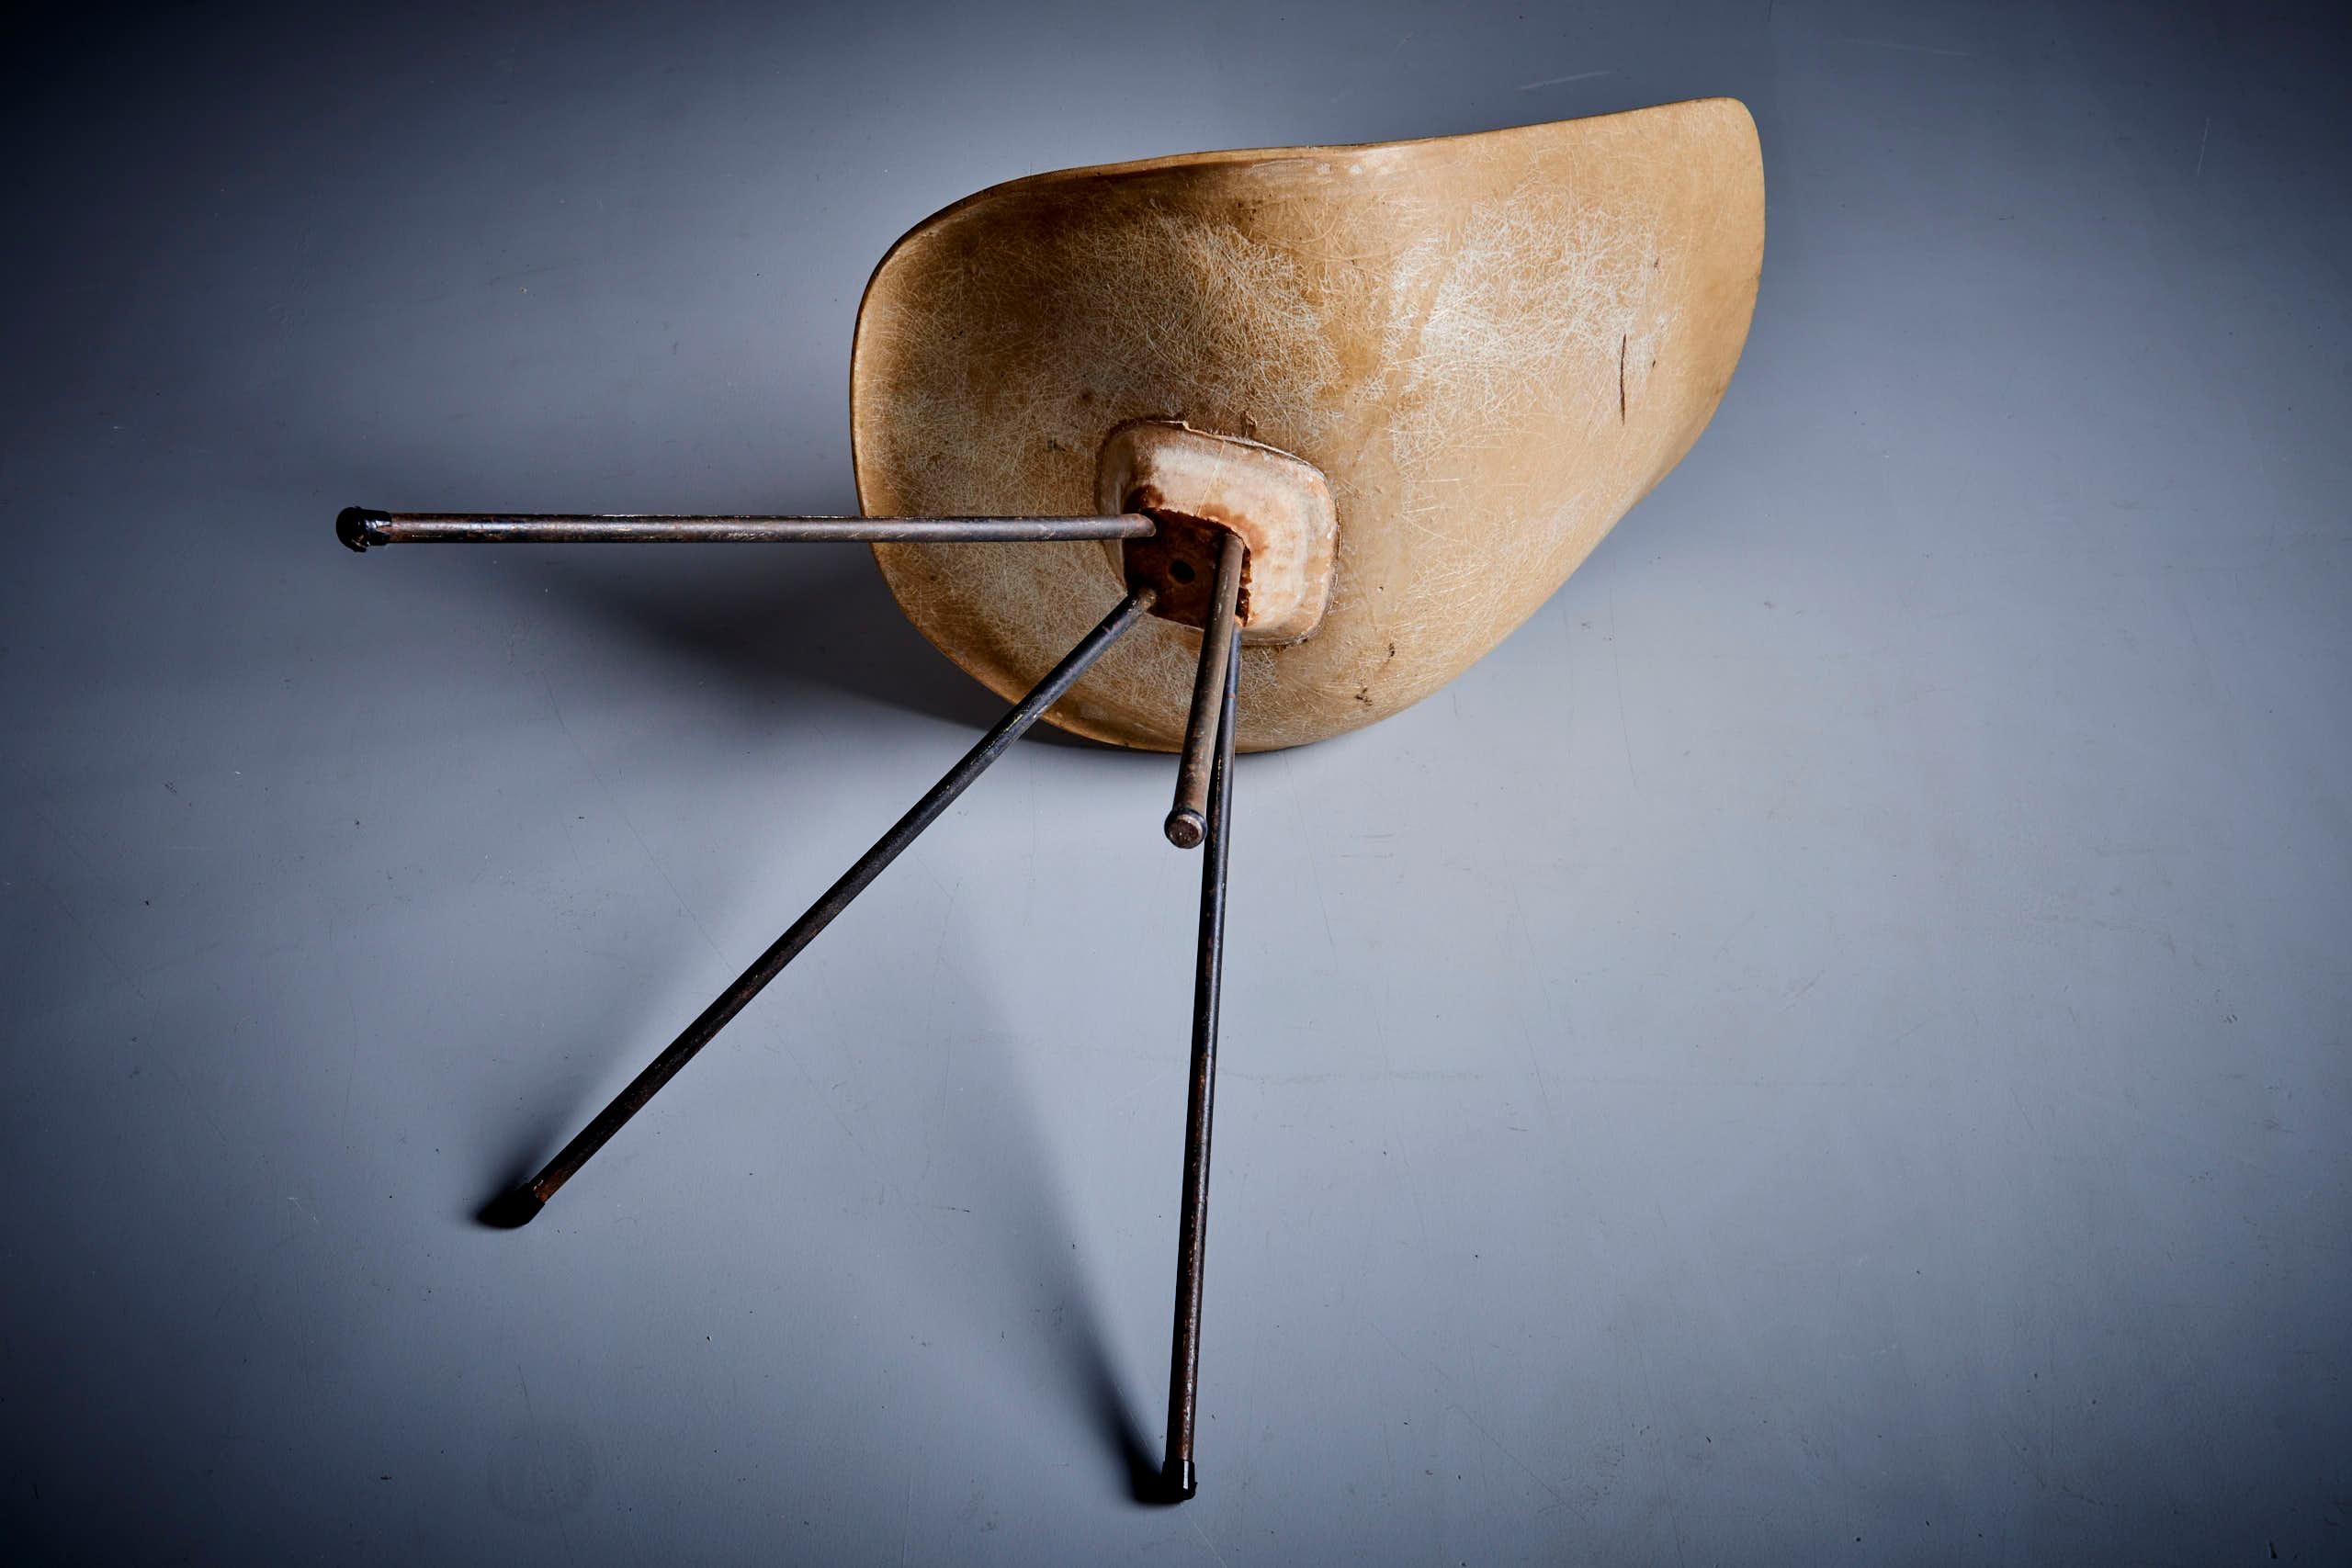 Jean-René Picard for S.E.T.A Fiberglass Chair France - 1950s For Sale 5